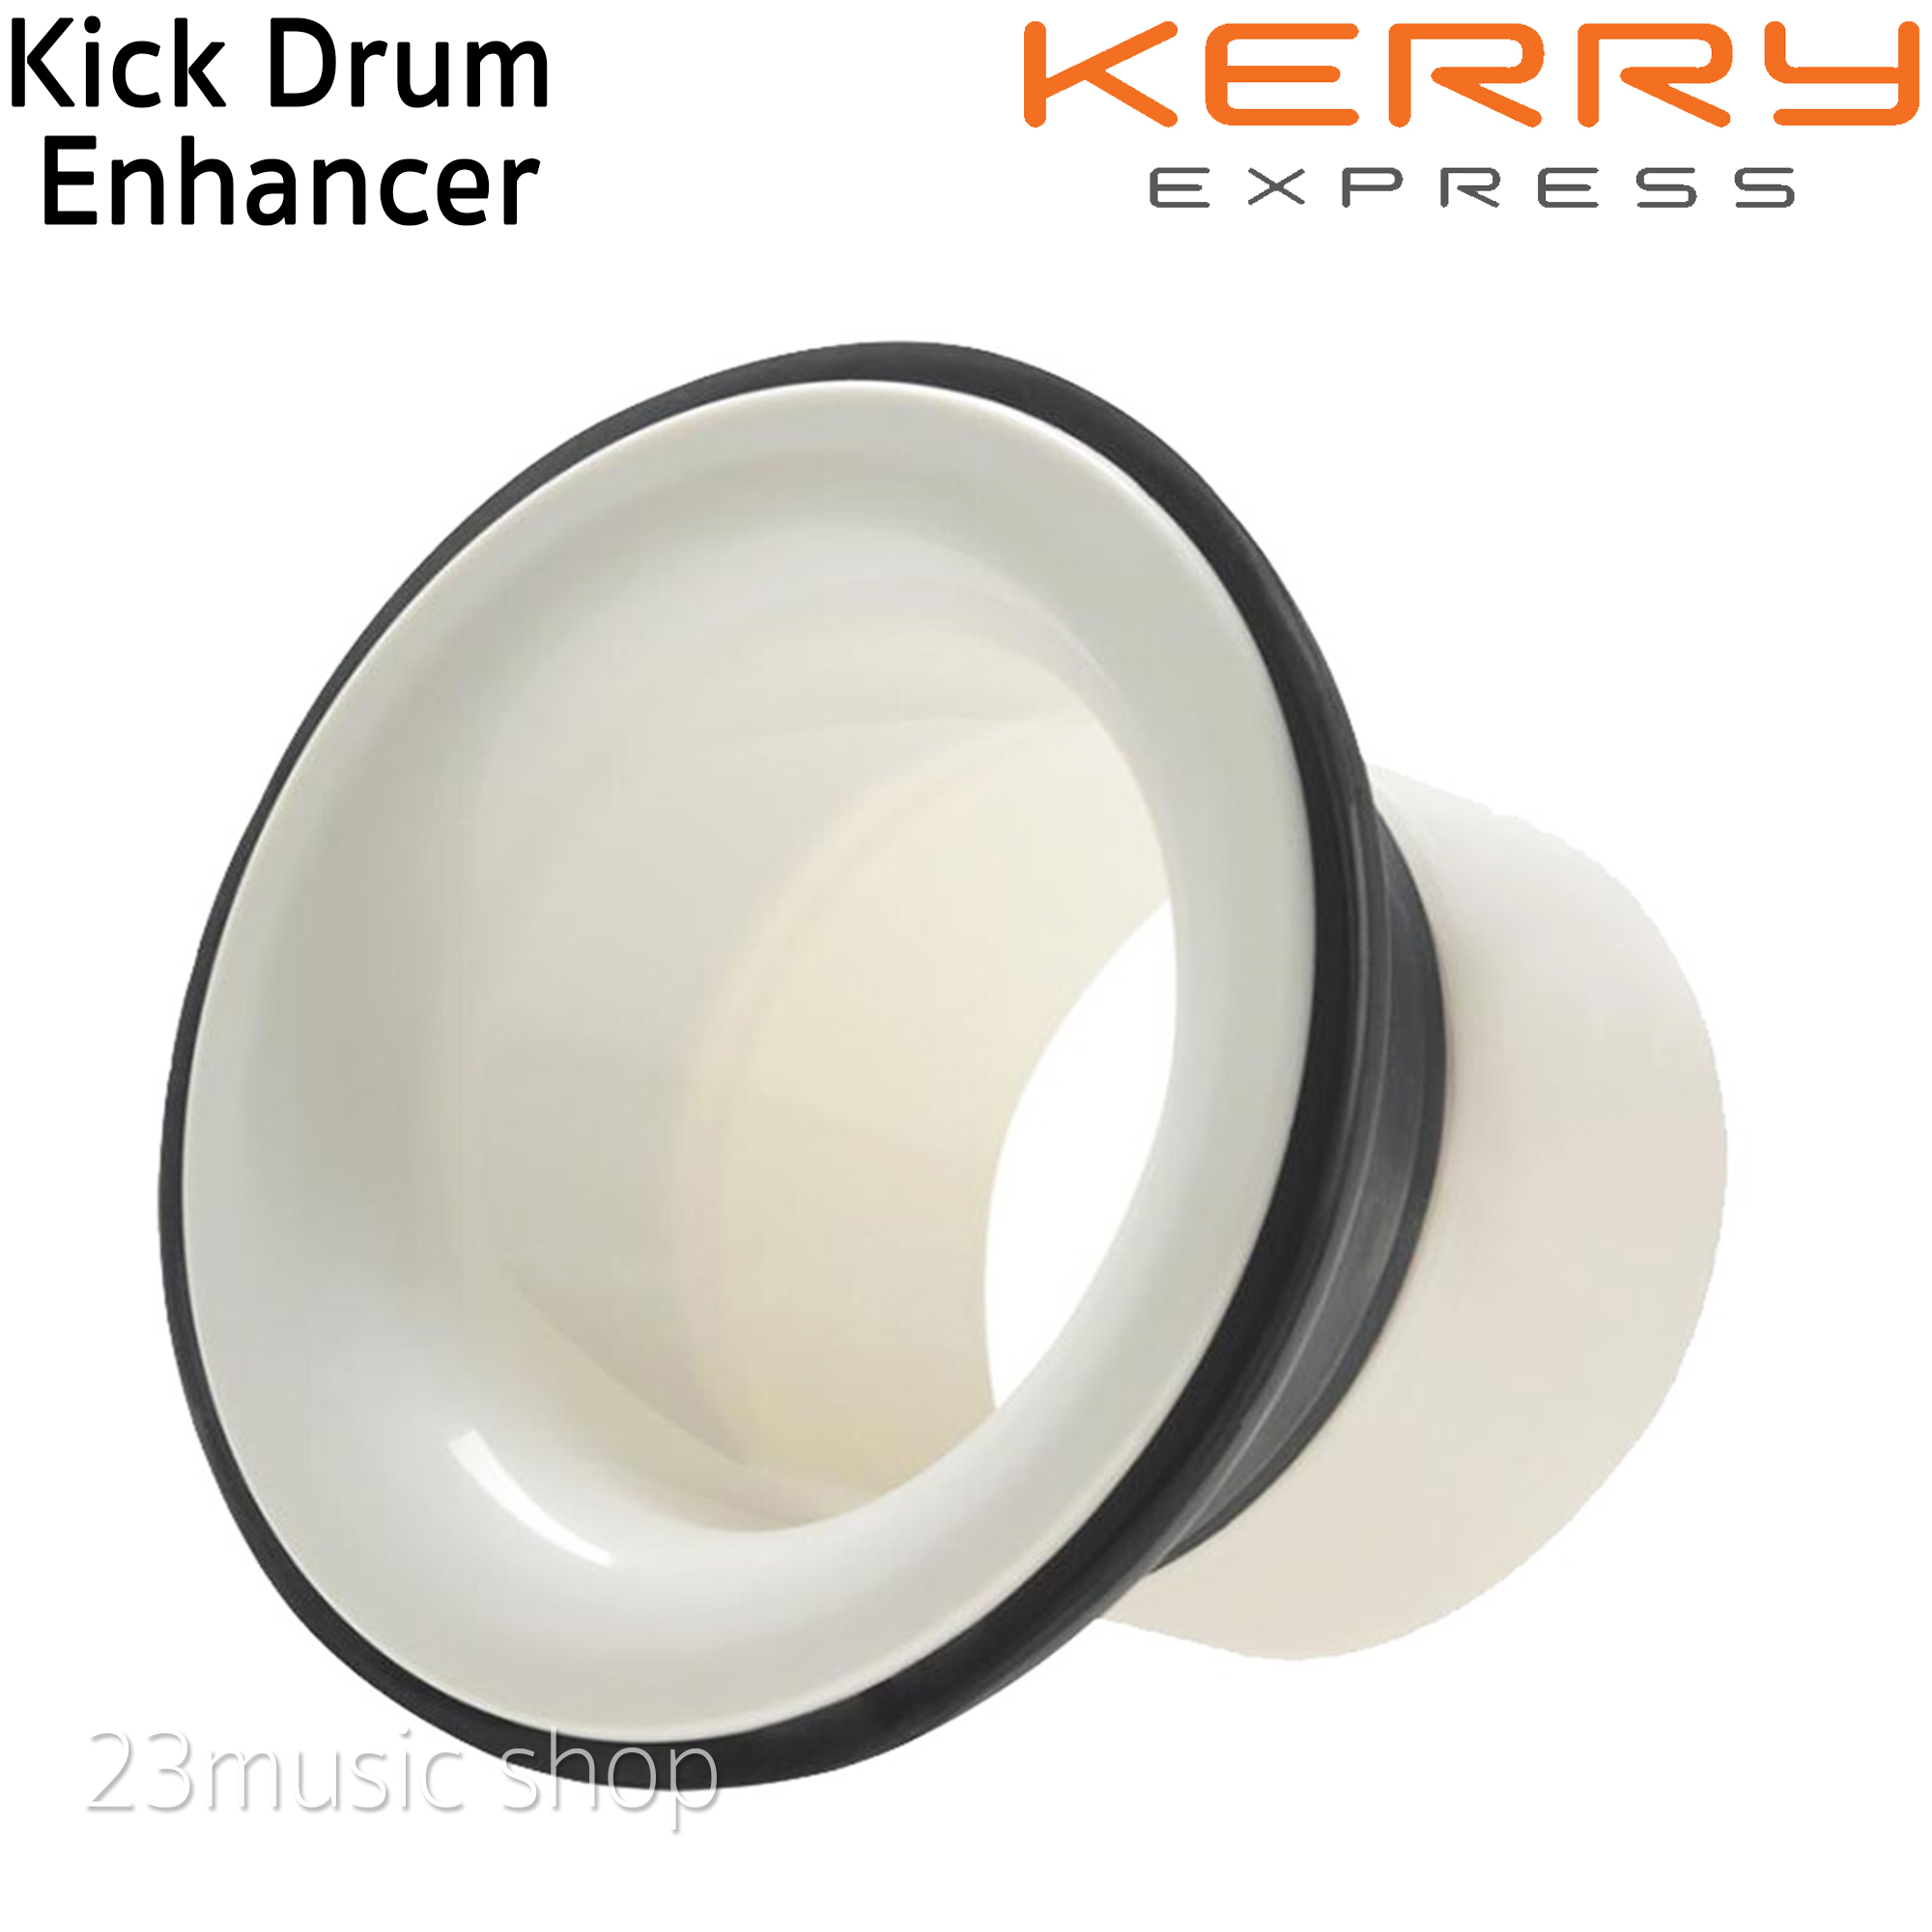 Kick Drum Enhancer อุปกรณ์ที่ช่วยให้เสียงกระเดื่องลึกขึ้น